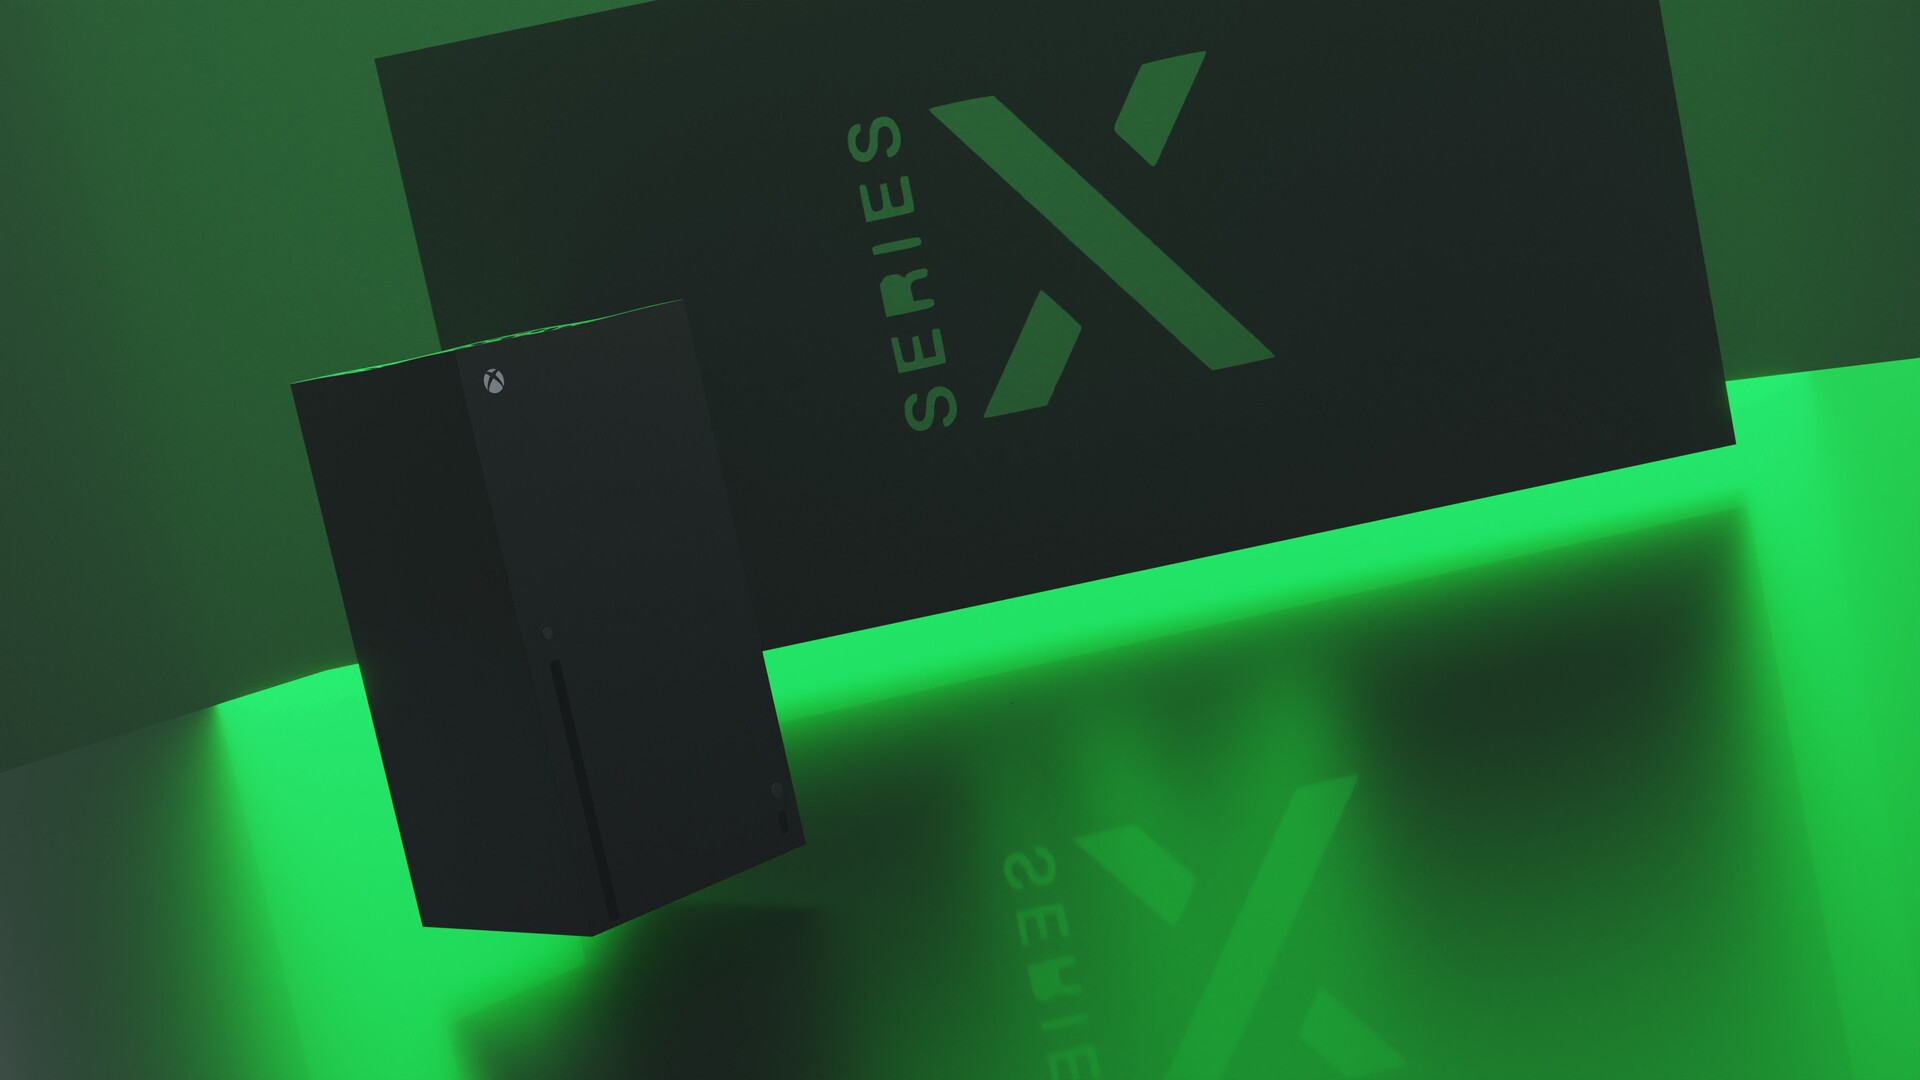 Hãy thưởng thức bộ ảnh Xbox Series X đầy ấn tượng và sáng tạo với những thiết kế hiện đại, mang đến cho bạn cảm giác đắm chìm trong thế giới game một cách chân thực. Những hình ảnh về Xbox Series X render sẽ đem lại cho bạn cái nhìn toàn diện về sản phẩm này.